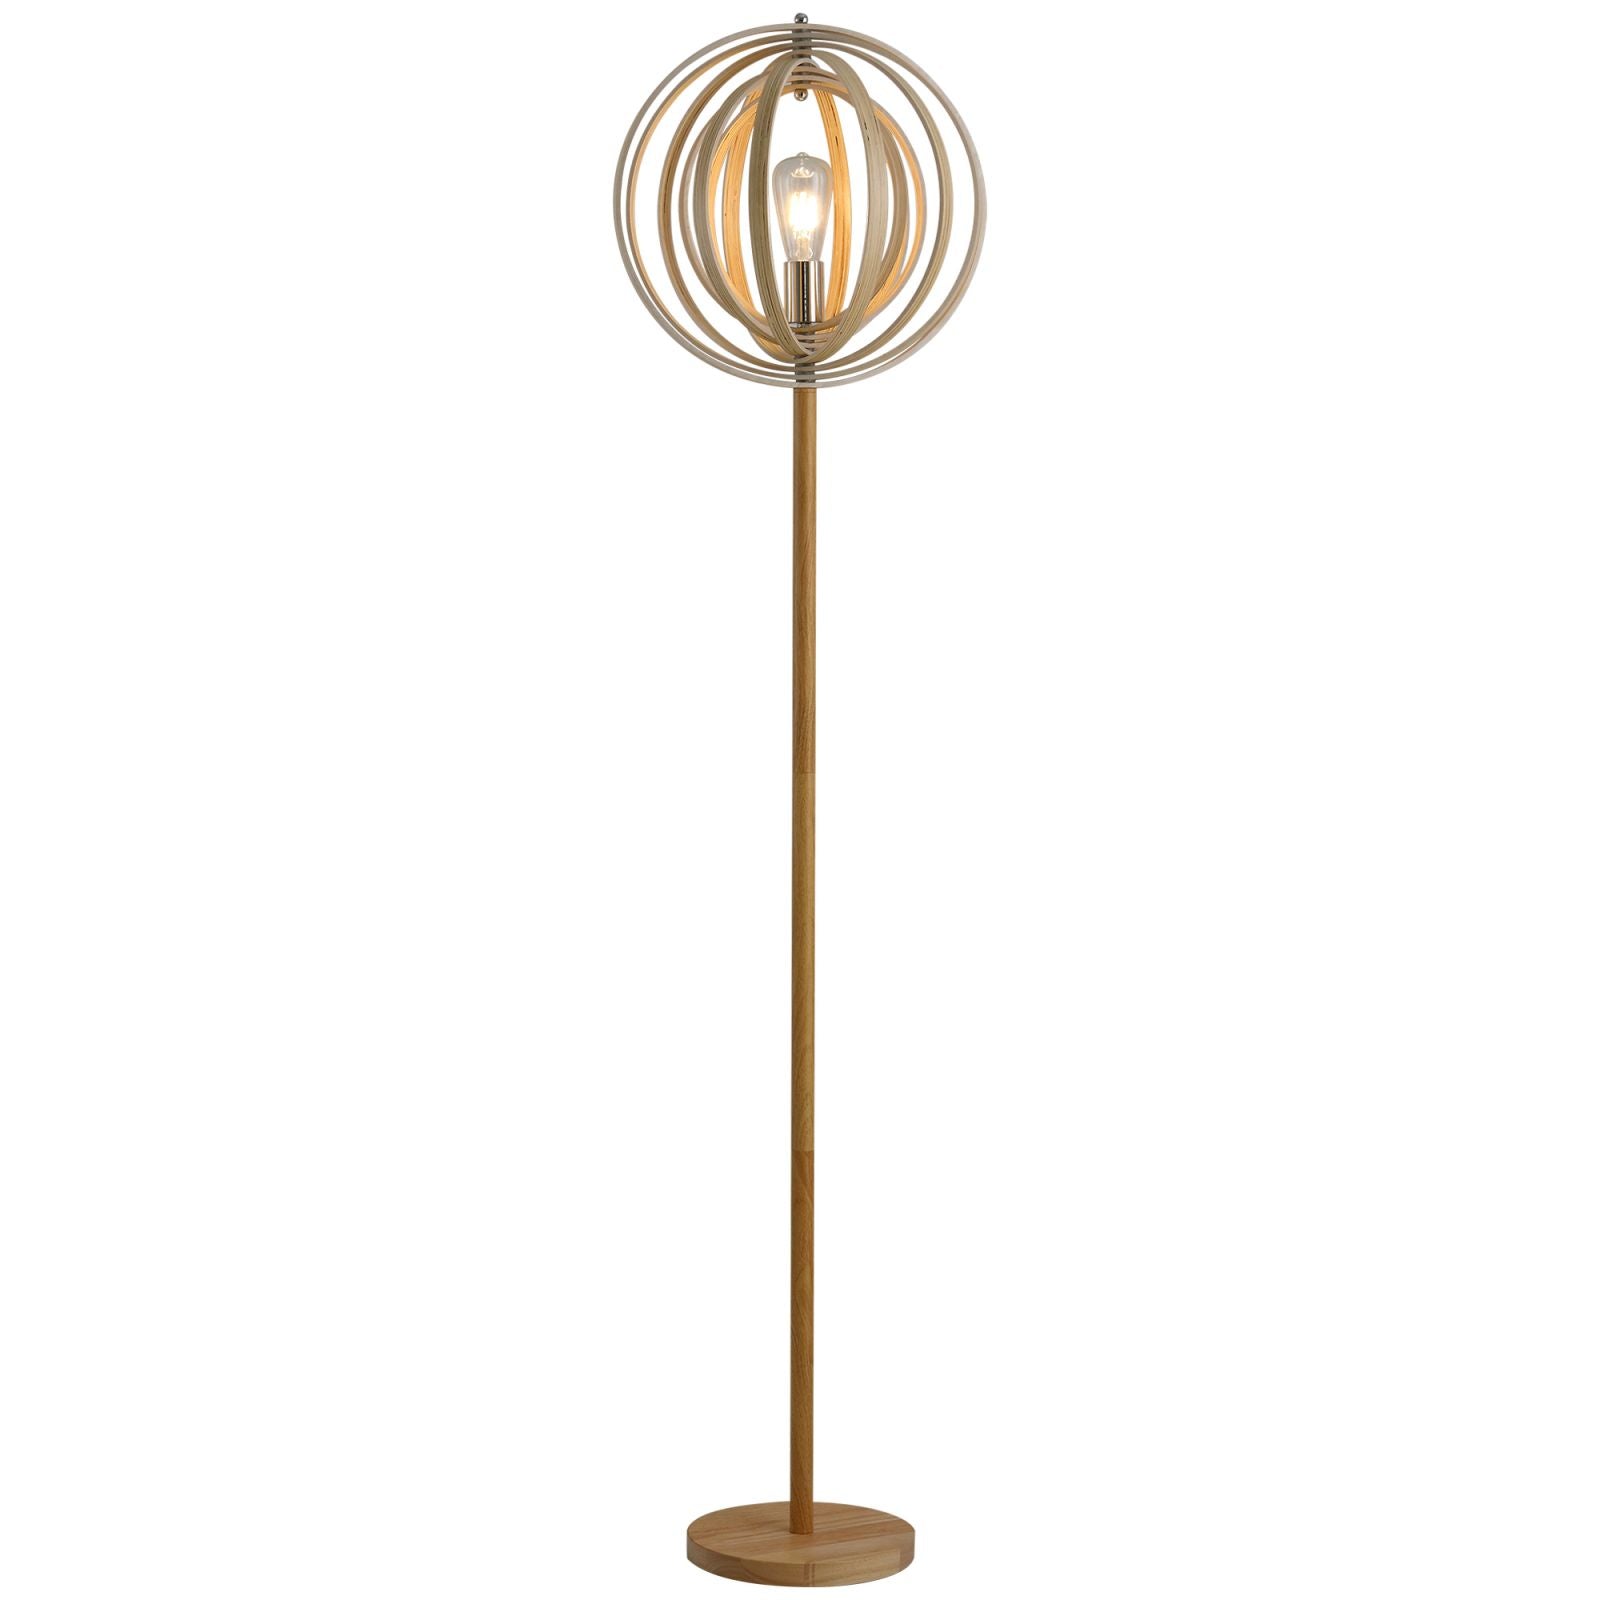 EASYCOMFORT Lampada da Terra per Soggiorno Design, Paralume con Anelli  Regolabili in Legno, Lampadine E27, Ф38 x 160 cm